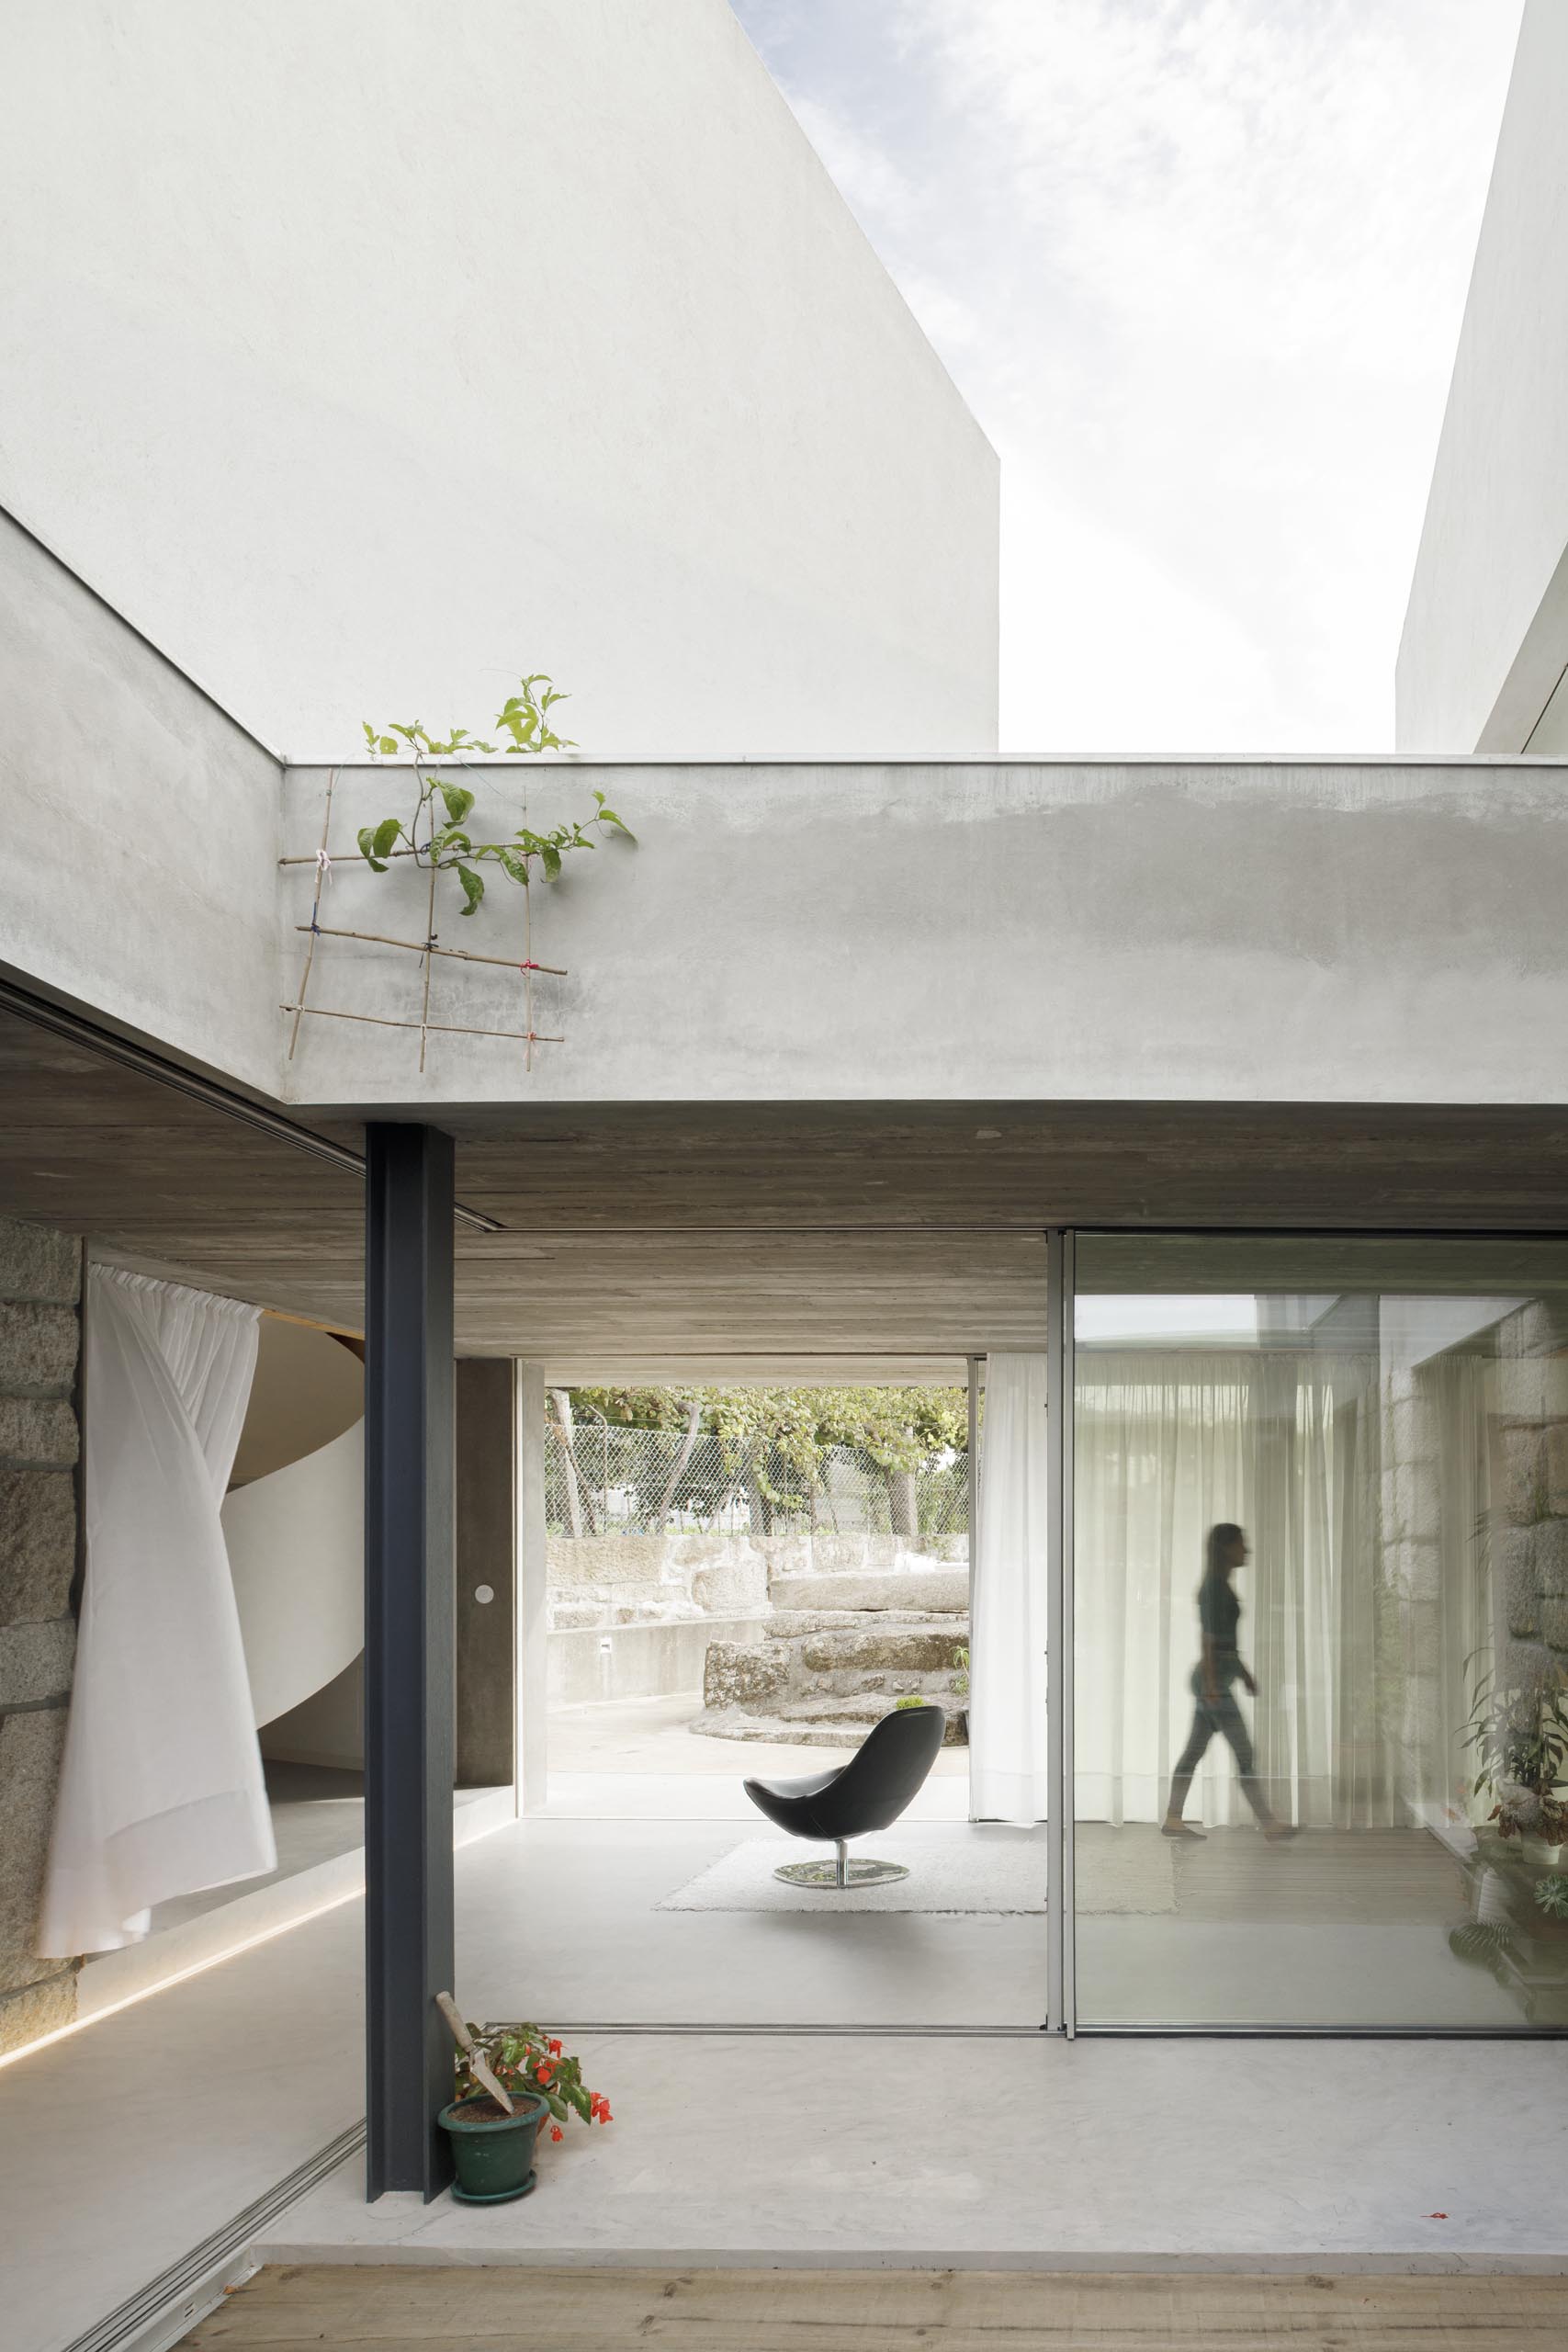 Раздвижные стеклянные стены соединяют внутренние помещения этого дома с окружающей средой.